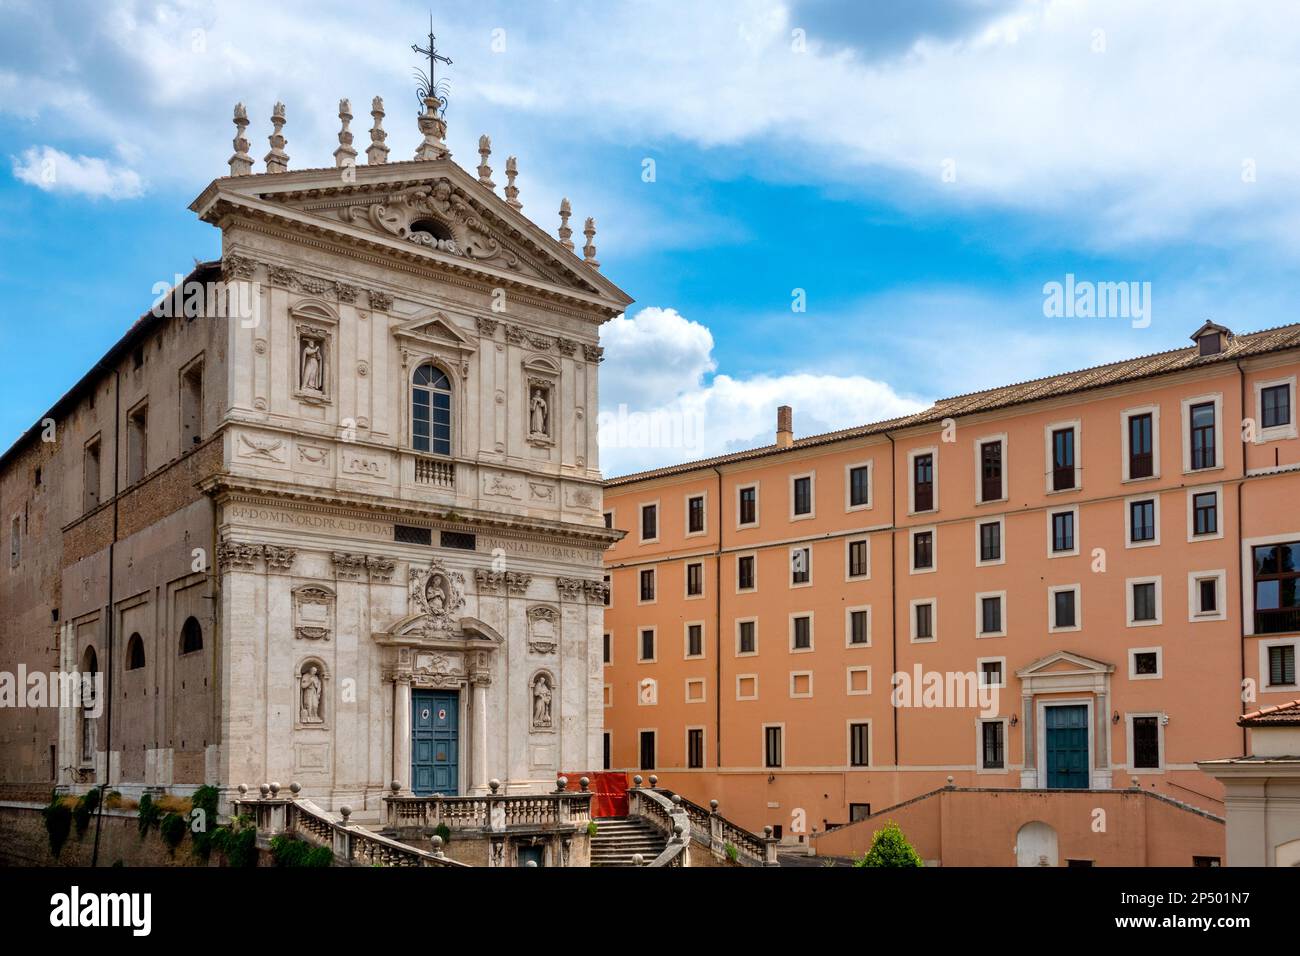 Façade de l'église Santi Domenico e Sisto et de l'université pontificale de Saint Thomas d'Aquin, Rome, Italie Banque D'Images